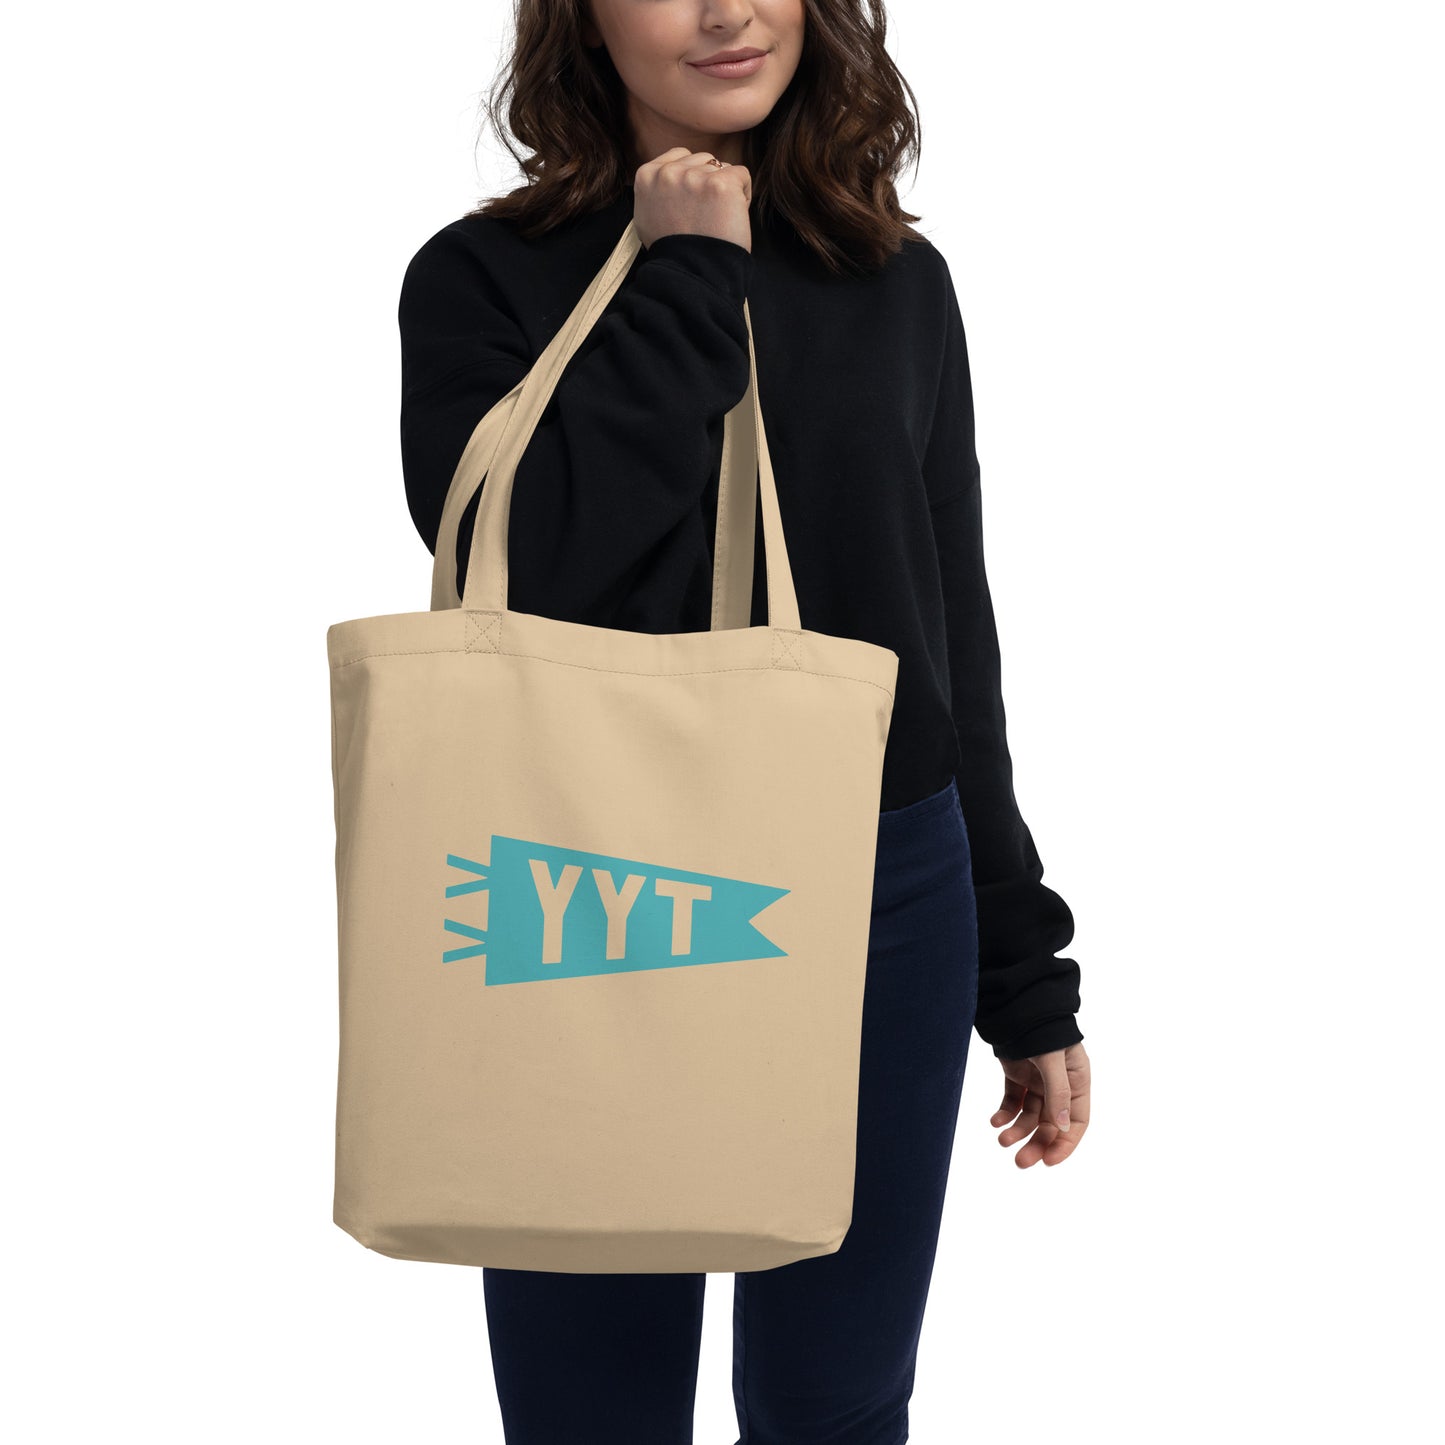 Cool Travel Gift Organic Tote Bag - Viking Blue • YYT St. John's • YHM Designs - Image 03